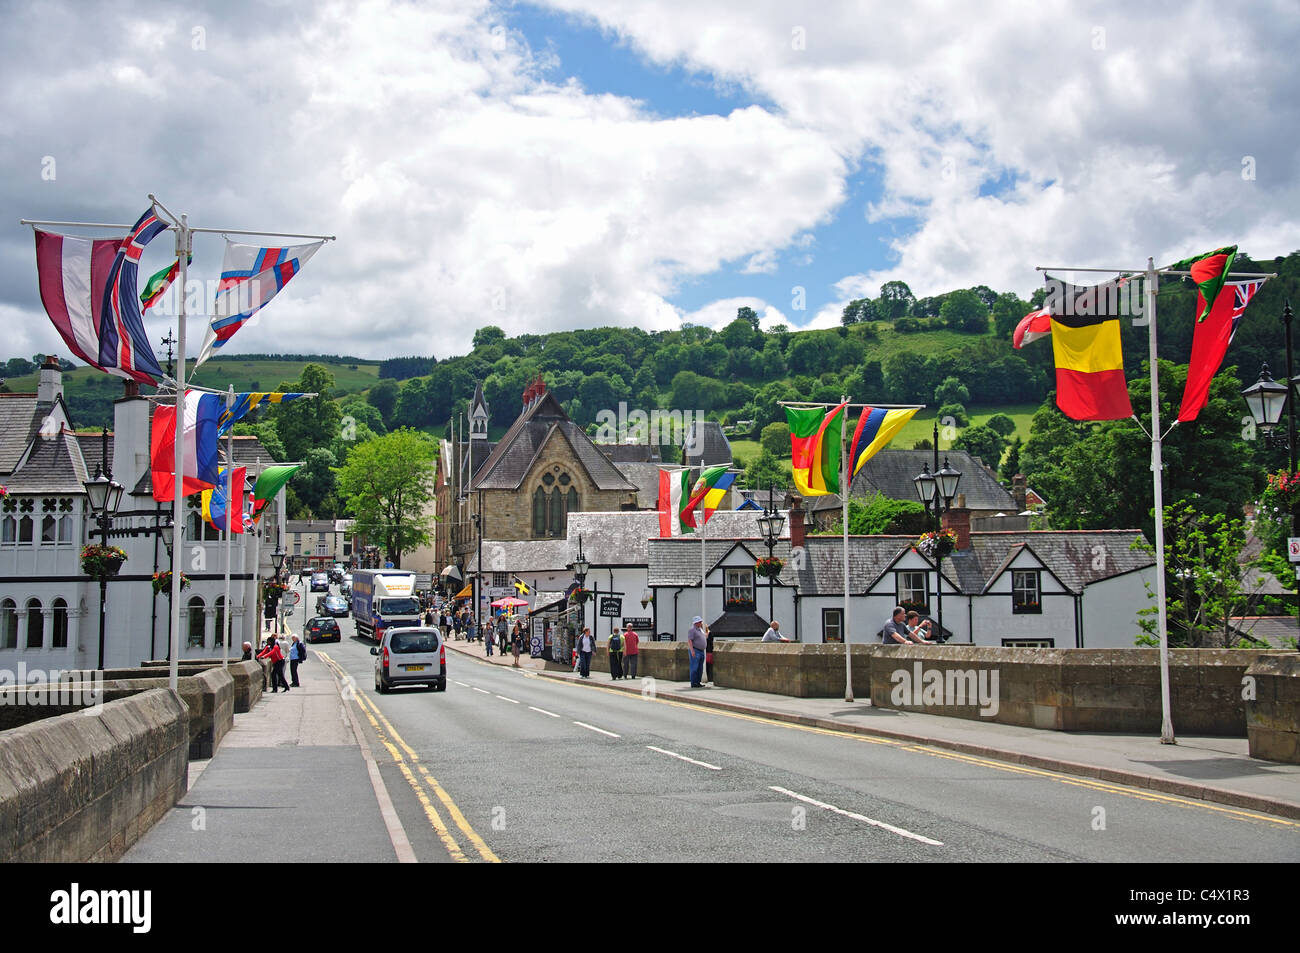 Vue sur la ville depuis le pont de Llangollen, Llangollen, Denbighshire (Sir Ddinbych), pays de Galles (Cymru), Royaume-Uni Banque D'Images